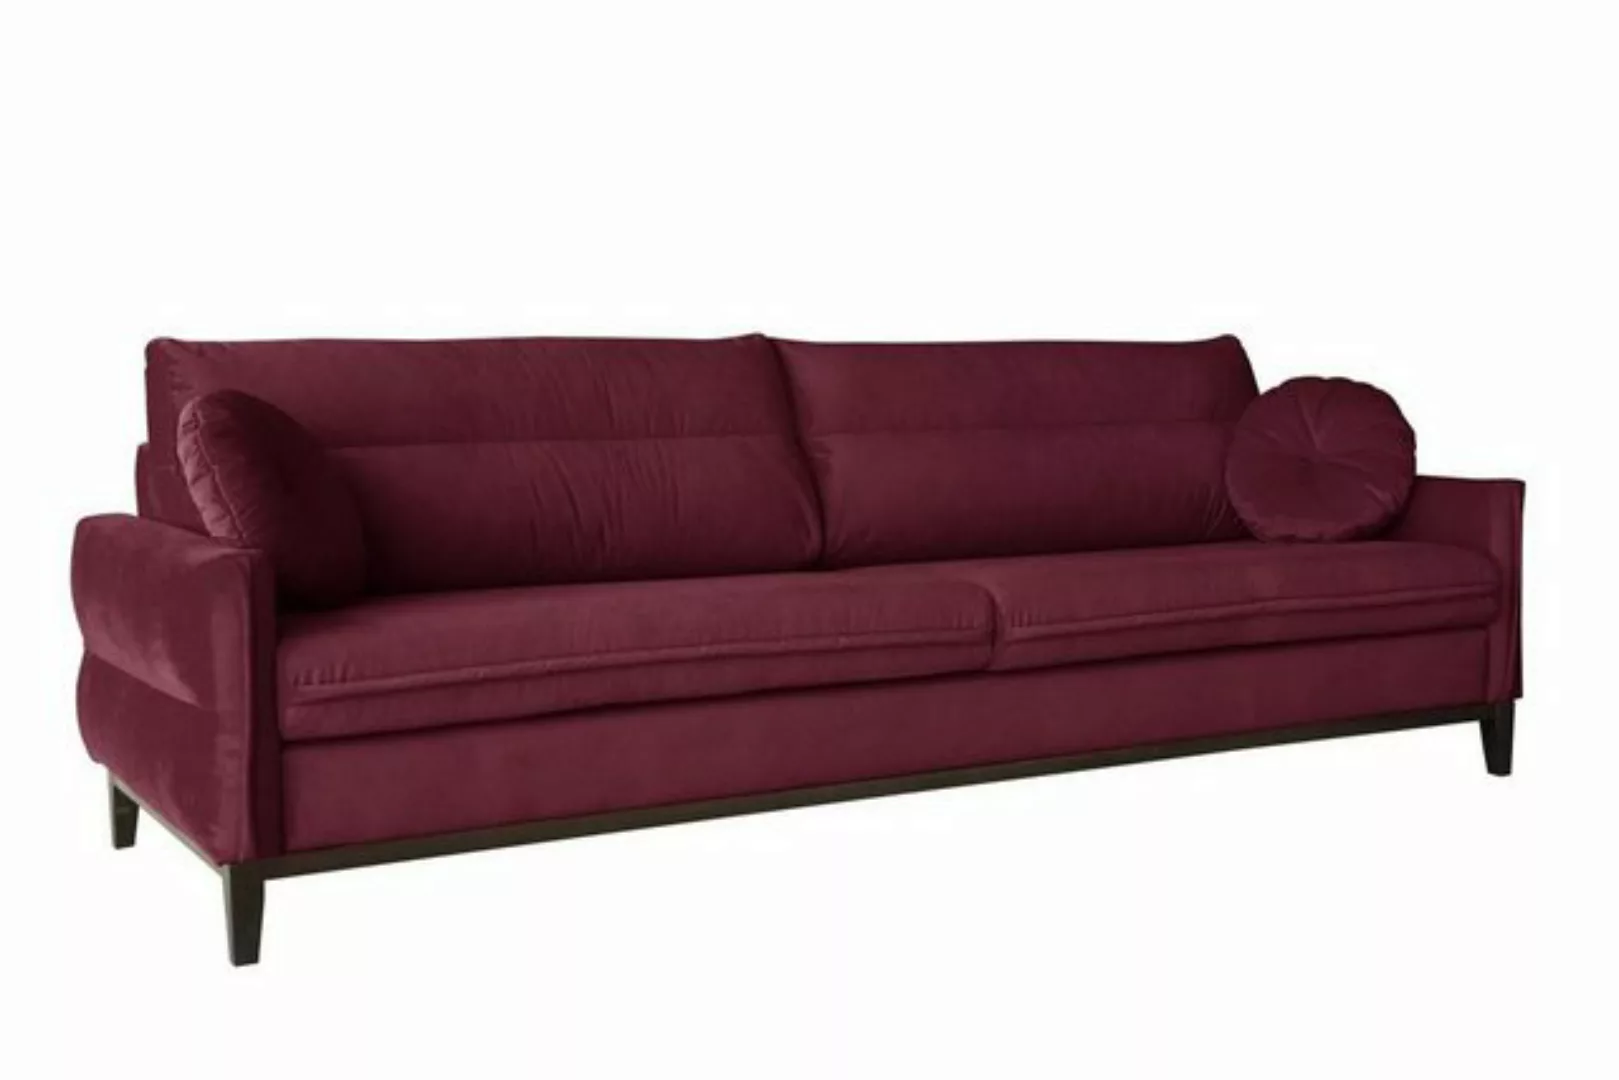 Beautysofa Sofa Belweder, 268 cm breite, Polstercouch für Wohnzimmer, 3-Sit günstig online kaufen